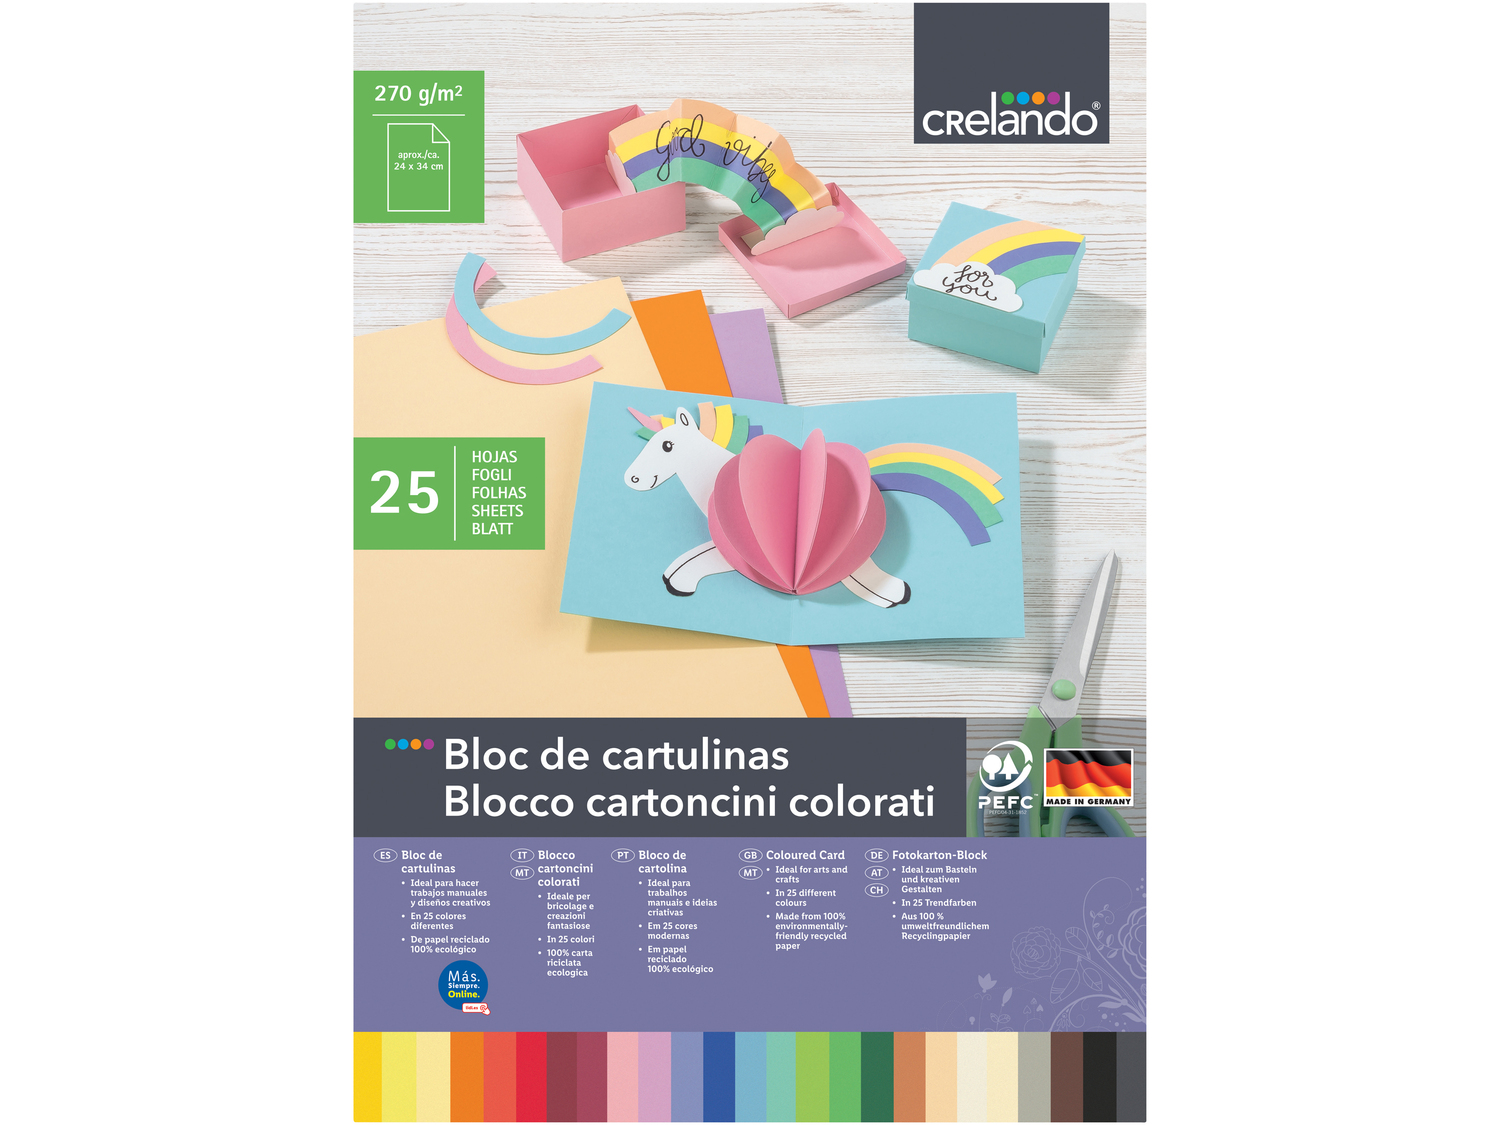 Blocco carta/cartoncini colorati Crelando, prezzo 2.49 € 
50 o 25 pezzi 
- 100% ...